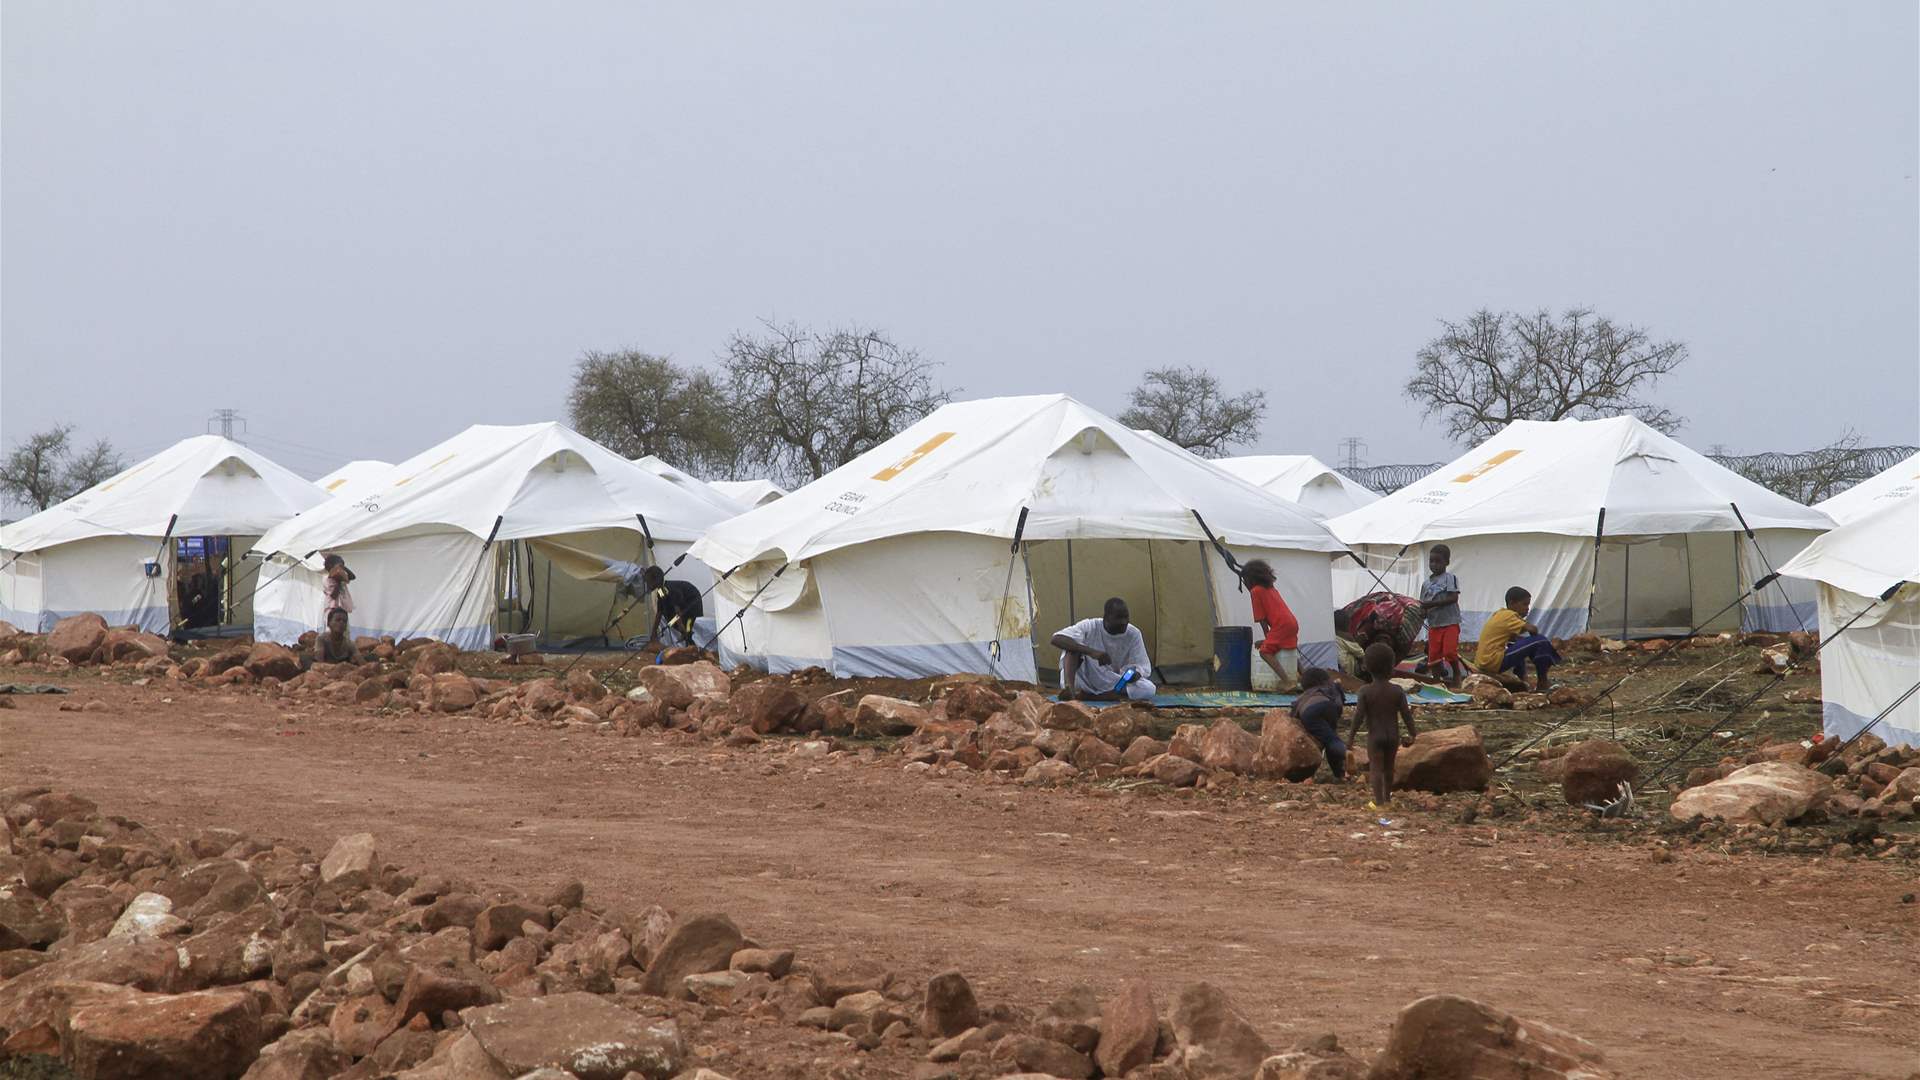 عضو في قوات الدعم السريع السودانية: بعض الخطوات لتسهيل وصول المساعدات لمناطق تحت سيطرتنا